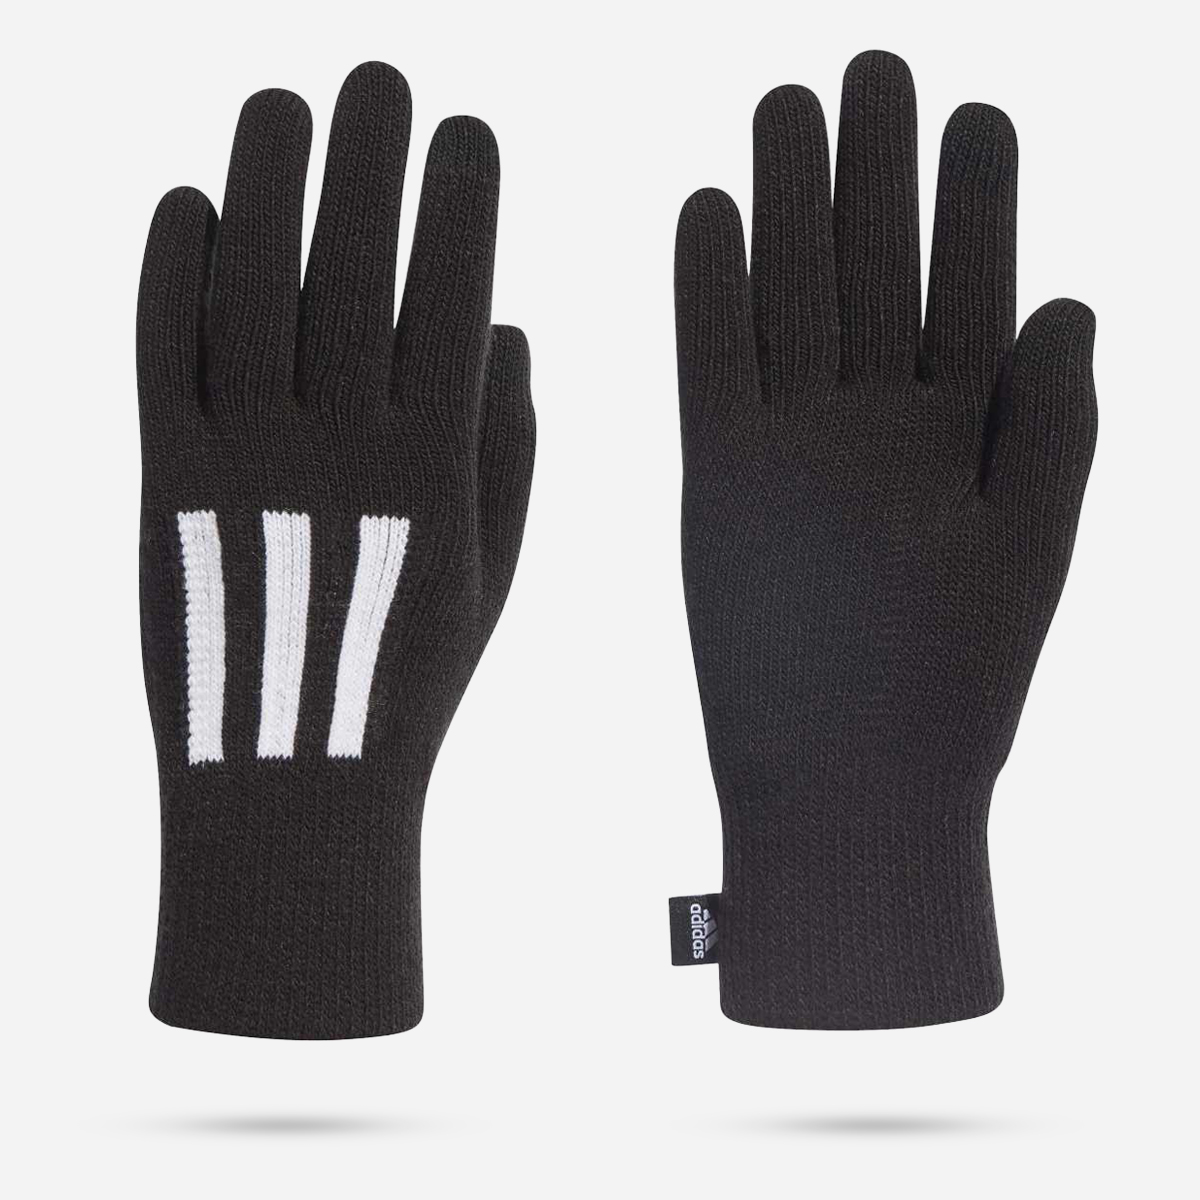 AN289896 3S Gloves Condu